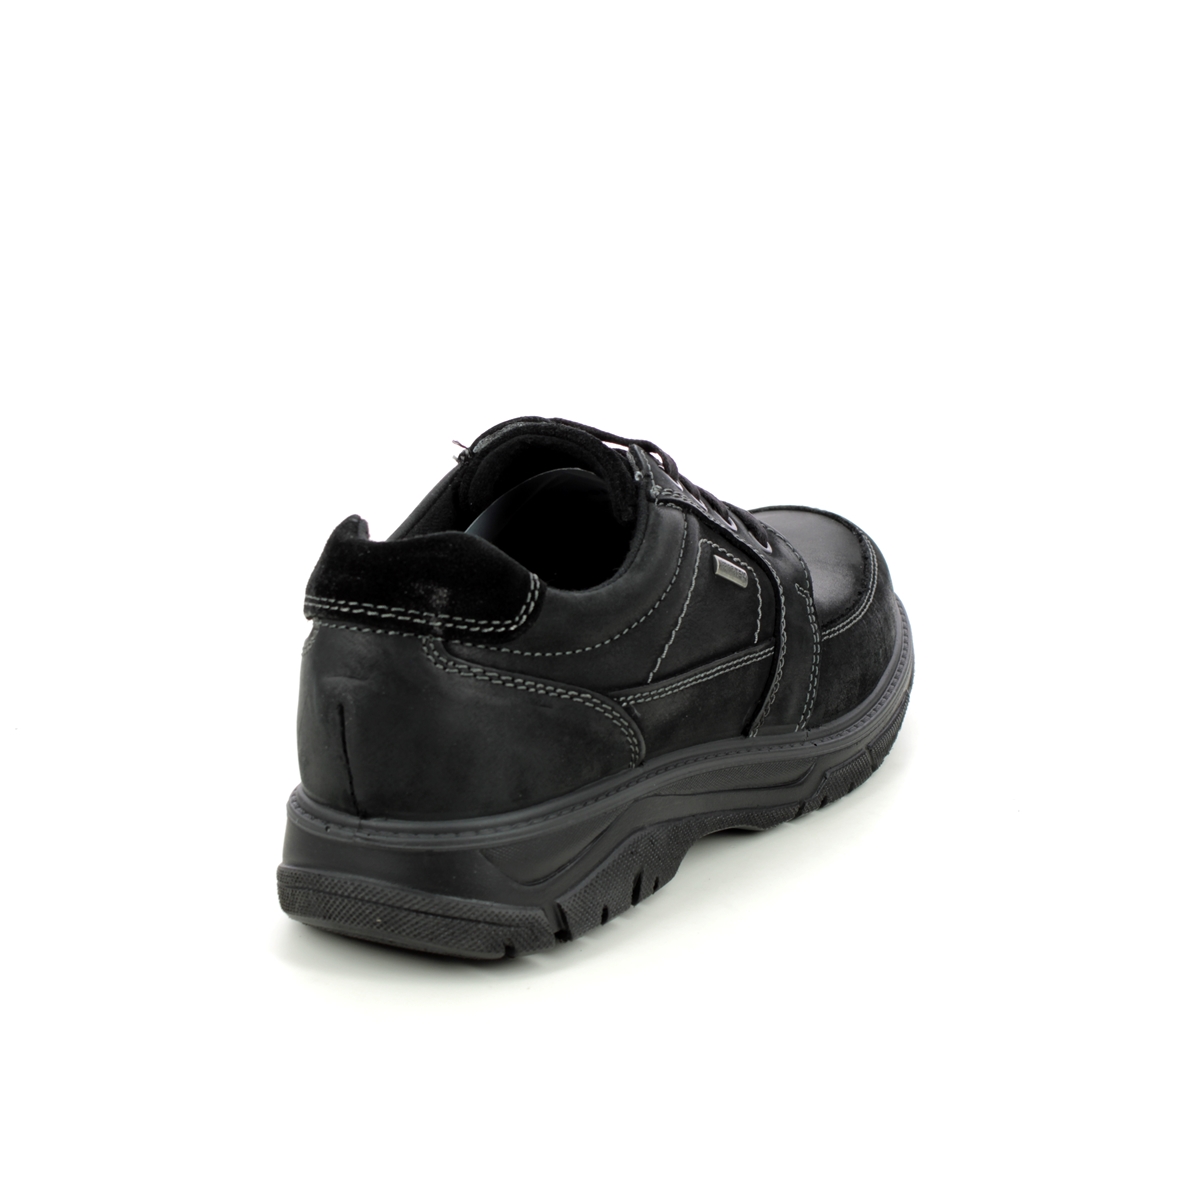 IMAC Hank Unease Tex Black leather Mens comfort shoes 1848-3470011